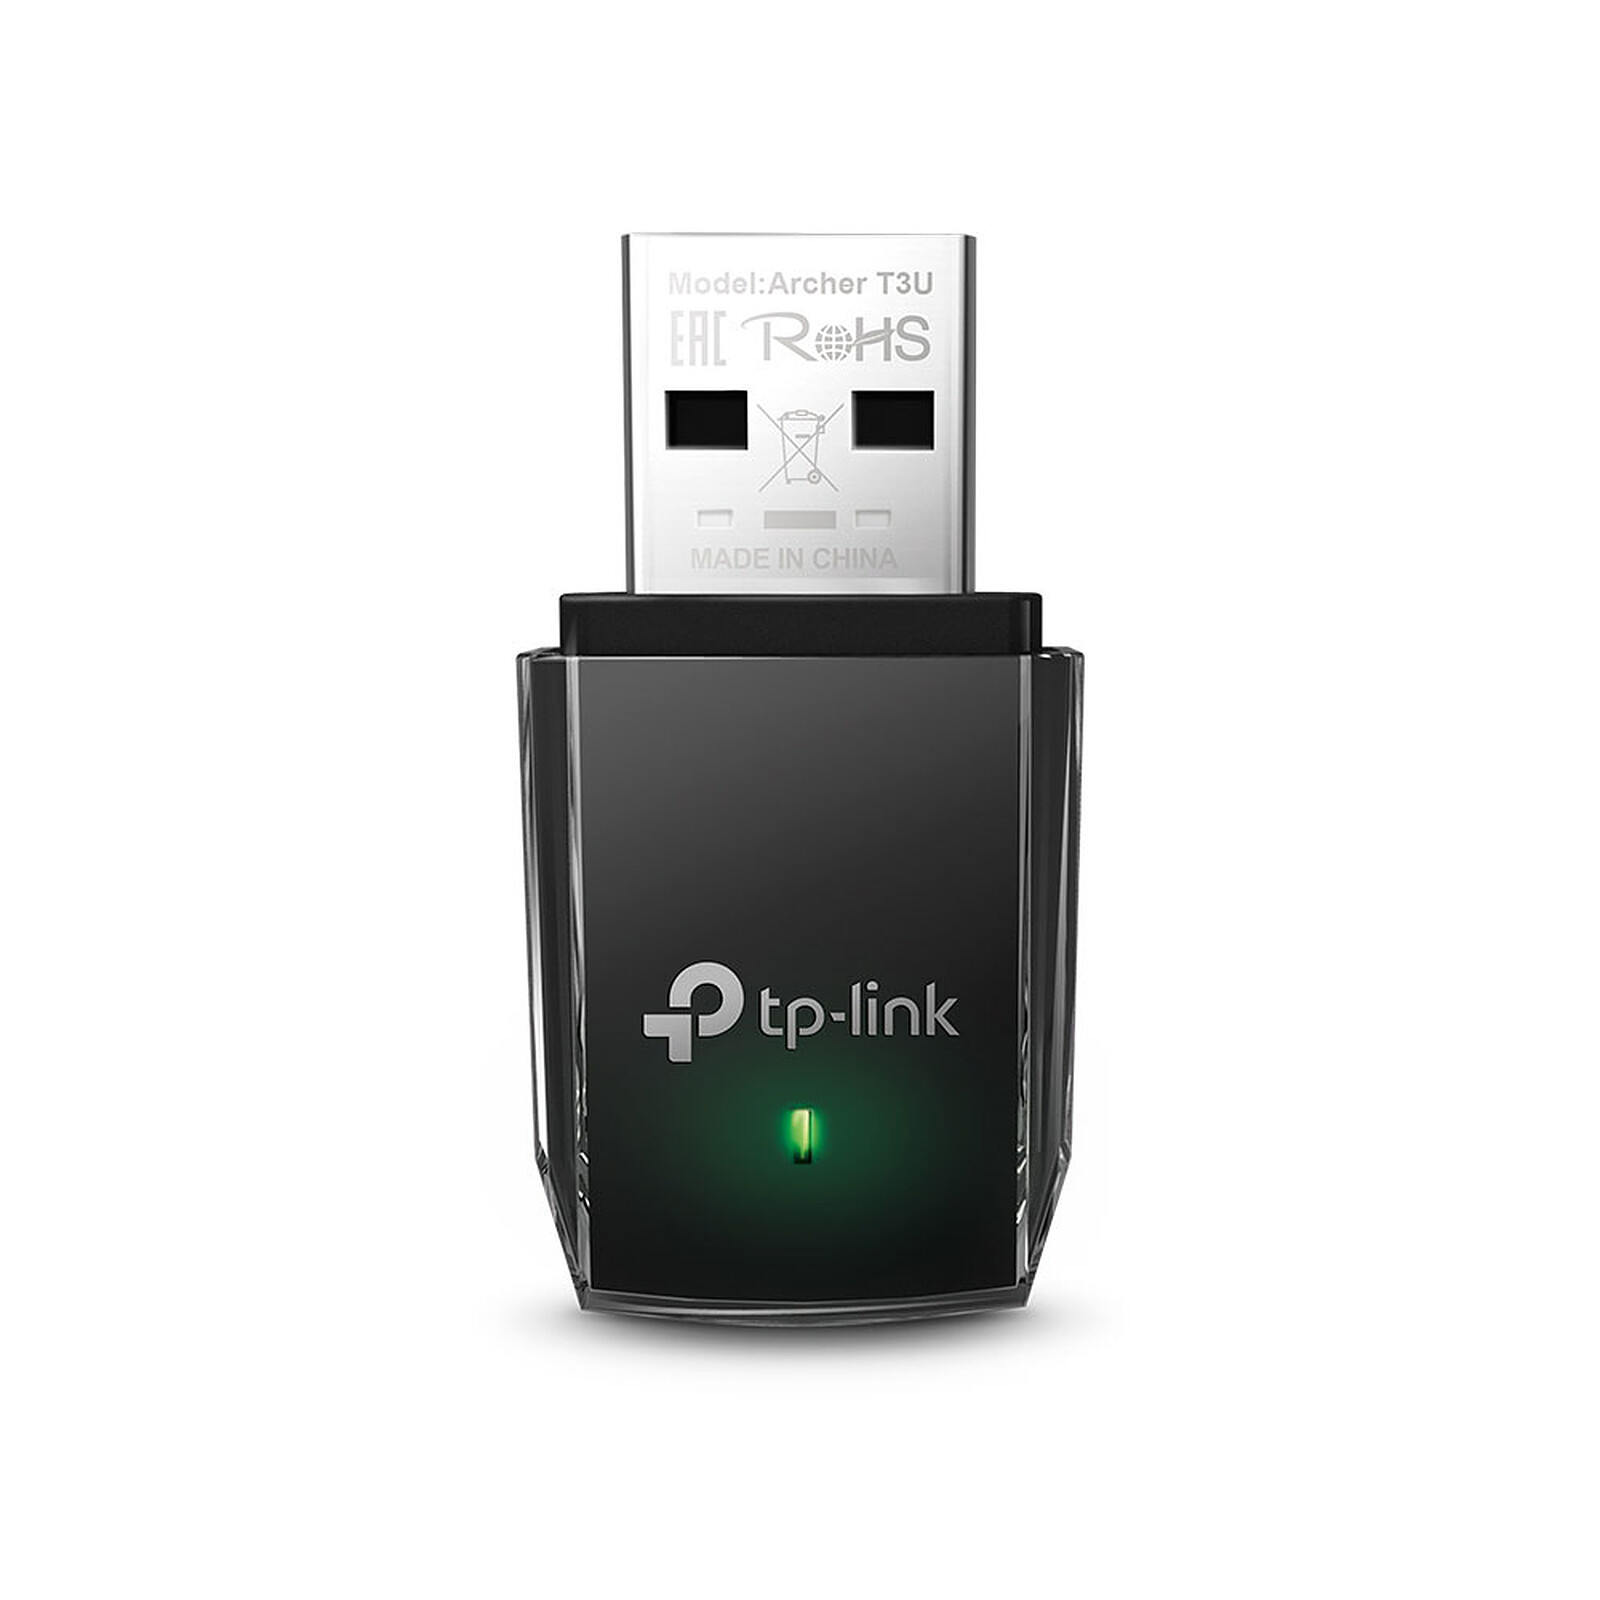 D-Link Clé USB WiFi AC1300 DWA-181 - Carte réseau D-Link